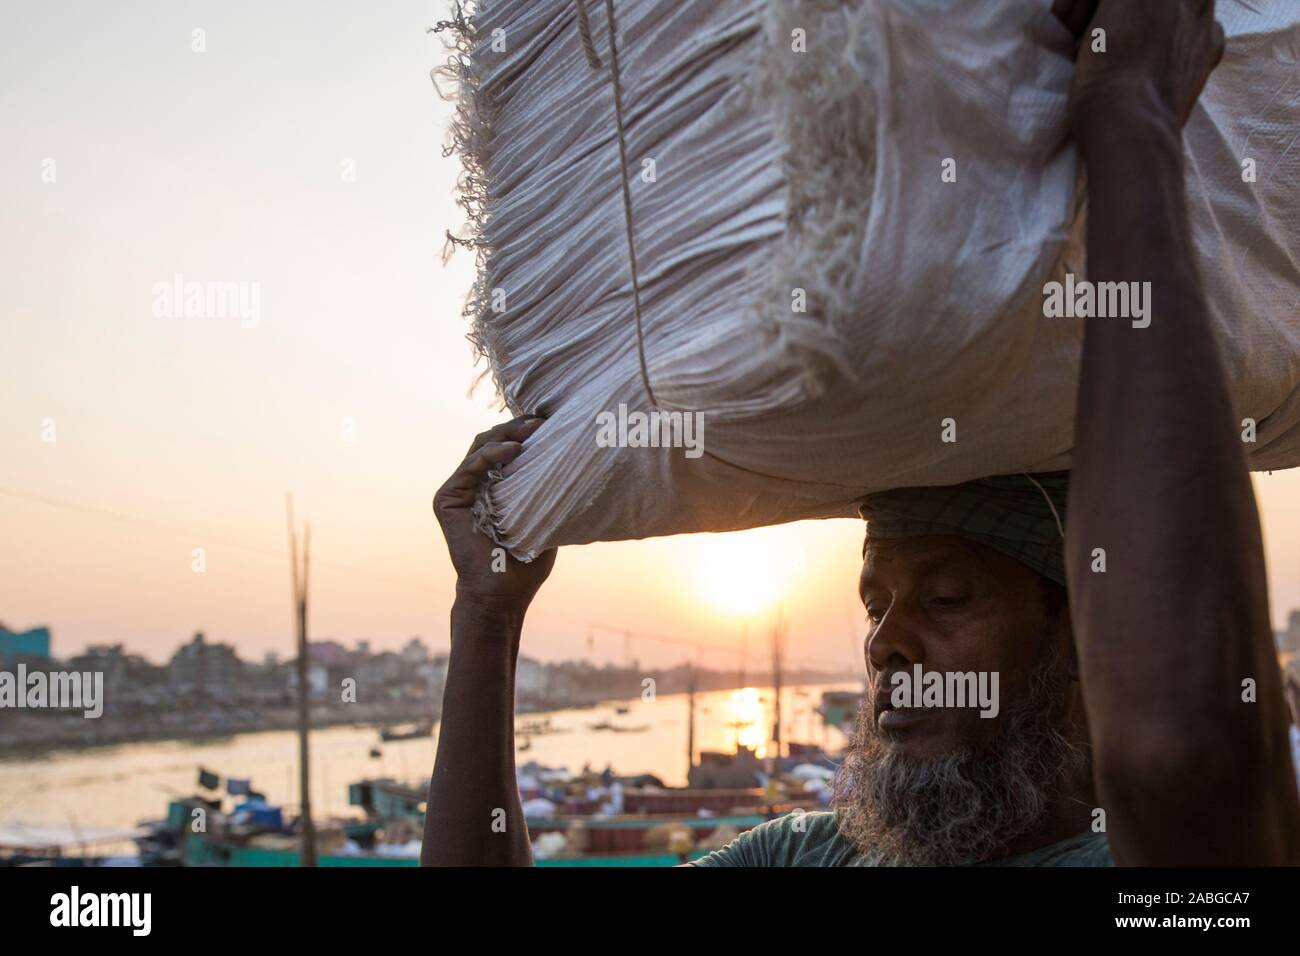 Dacca in Bangladesh - Novembre 27, 2019 : Operaio il caricamento di merci in barca nel fiume Burigana. Foto Stock